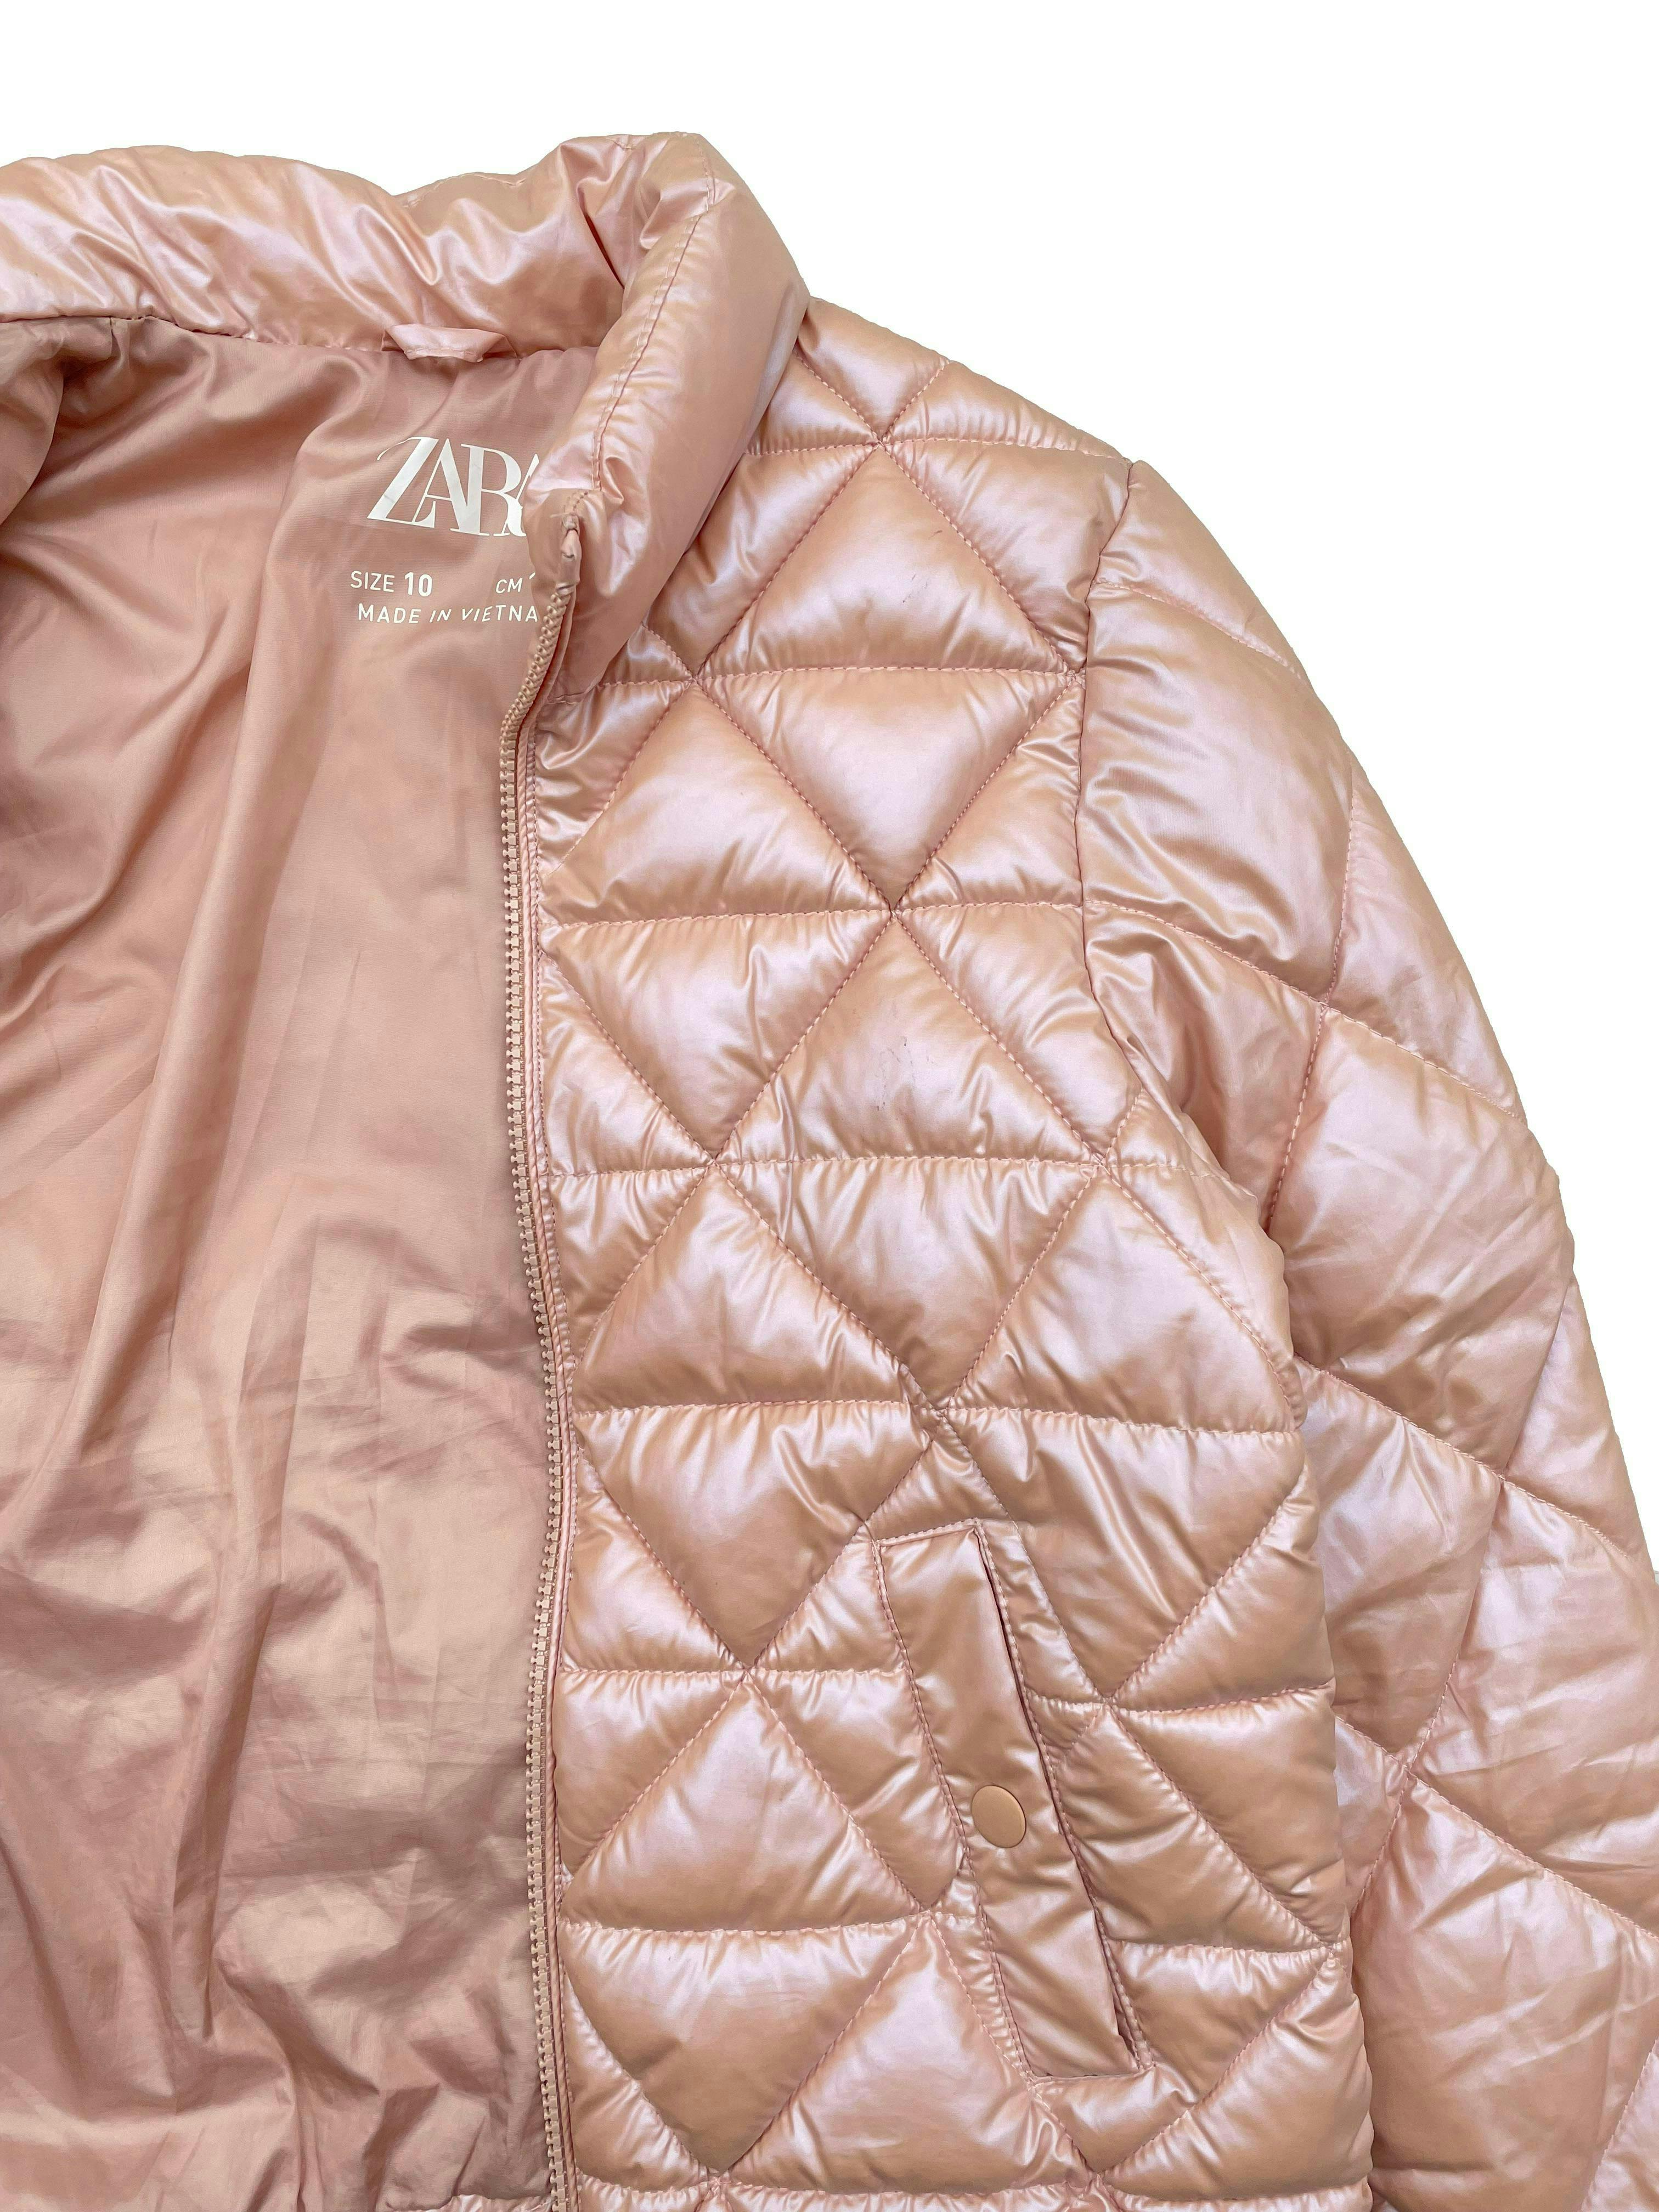 Puffer jacket Zara palo rosa satinada, forrada, con cierre y bolsillos. 